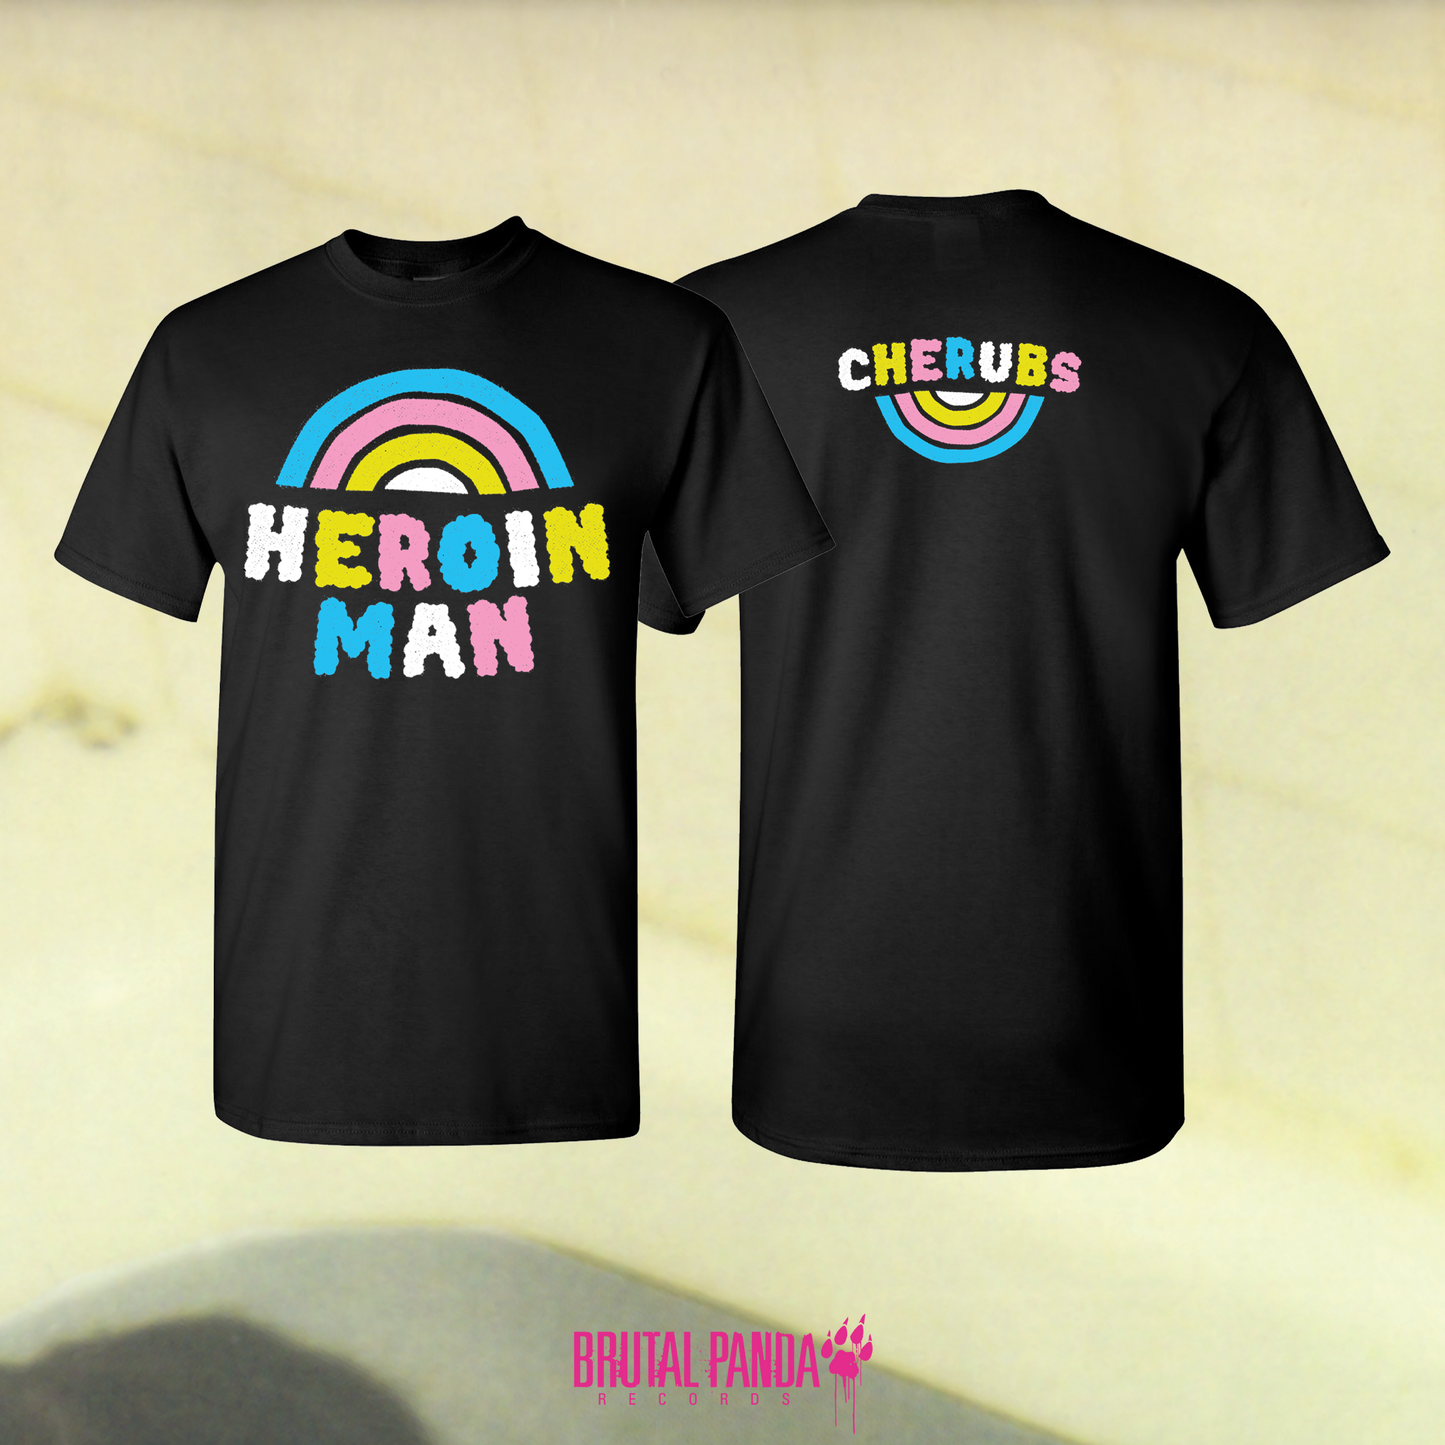 CHERUBS Heroin Man T-Shirt